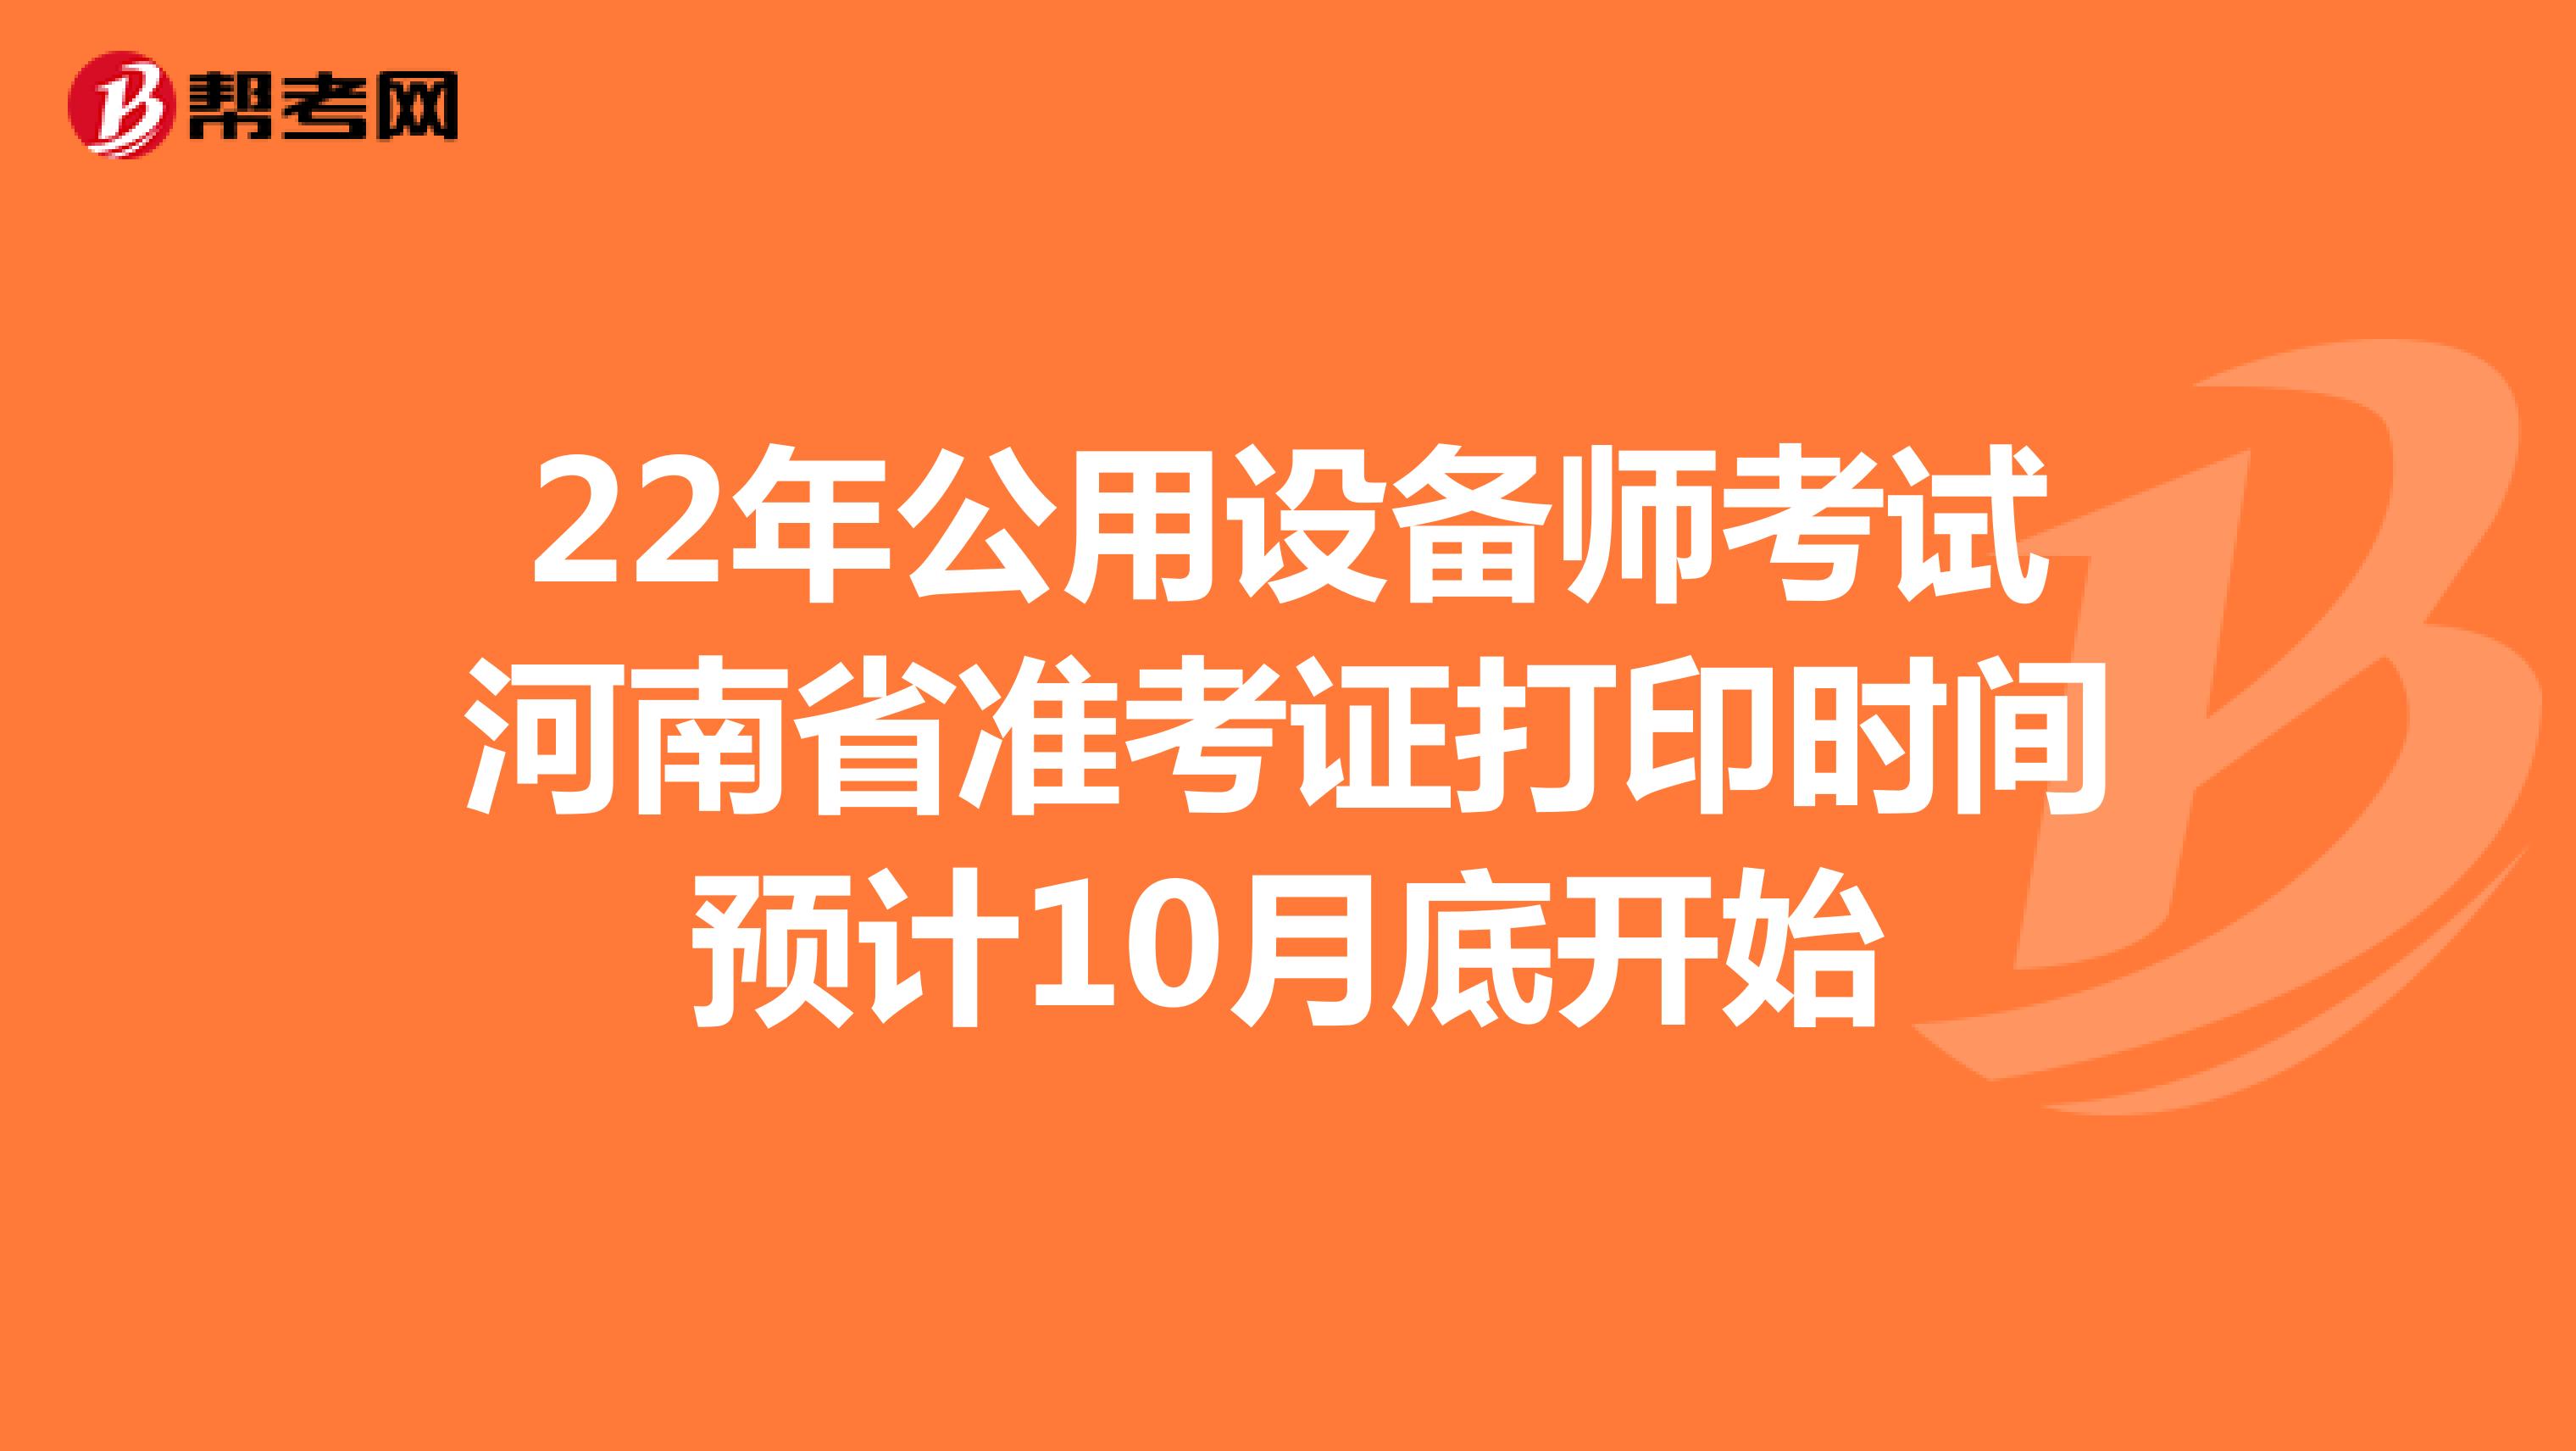 22年公用设备师考试河南省准考证打印时间预计10月底开始